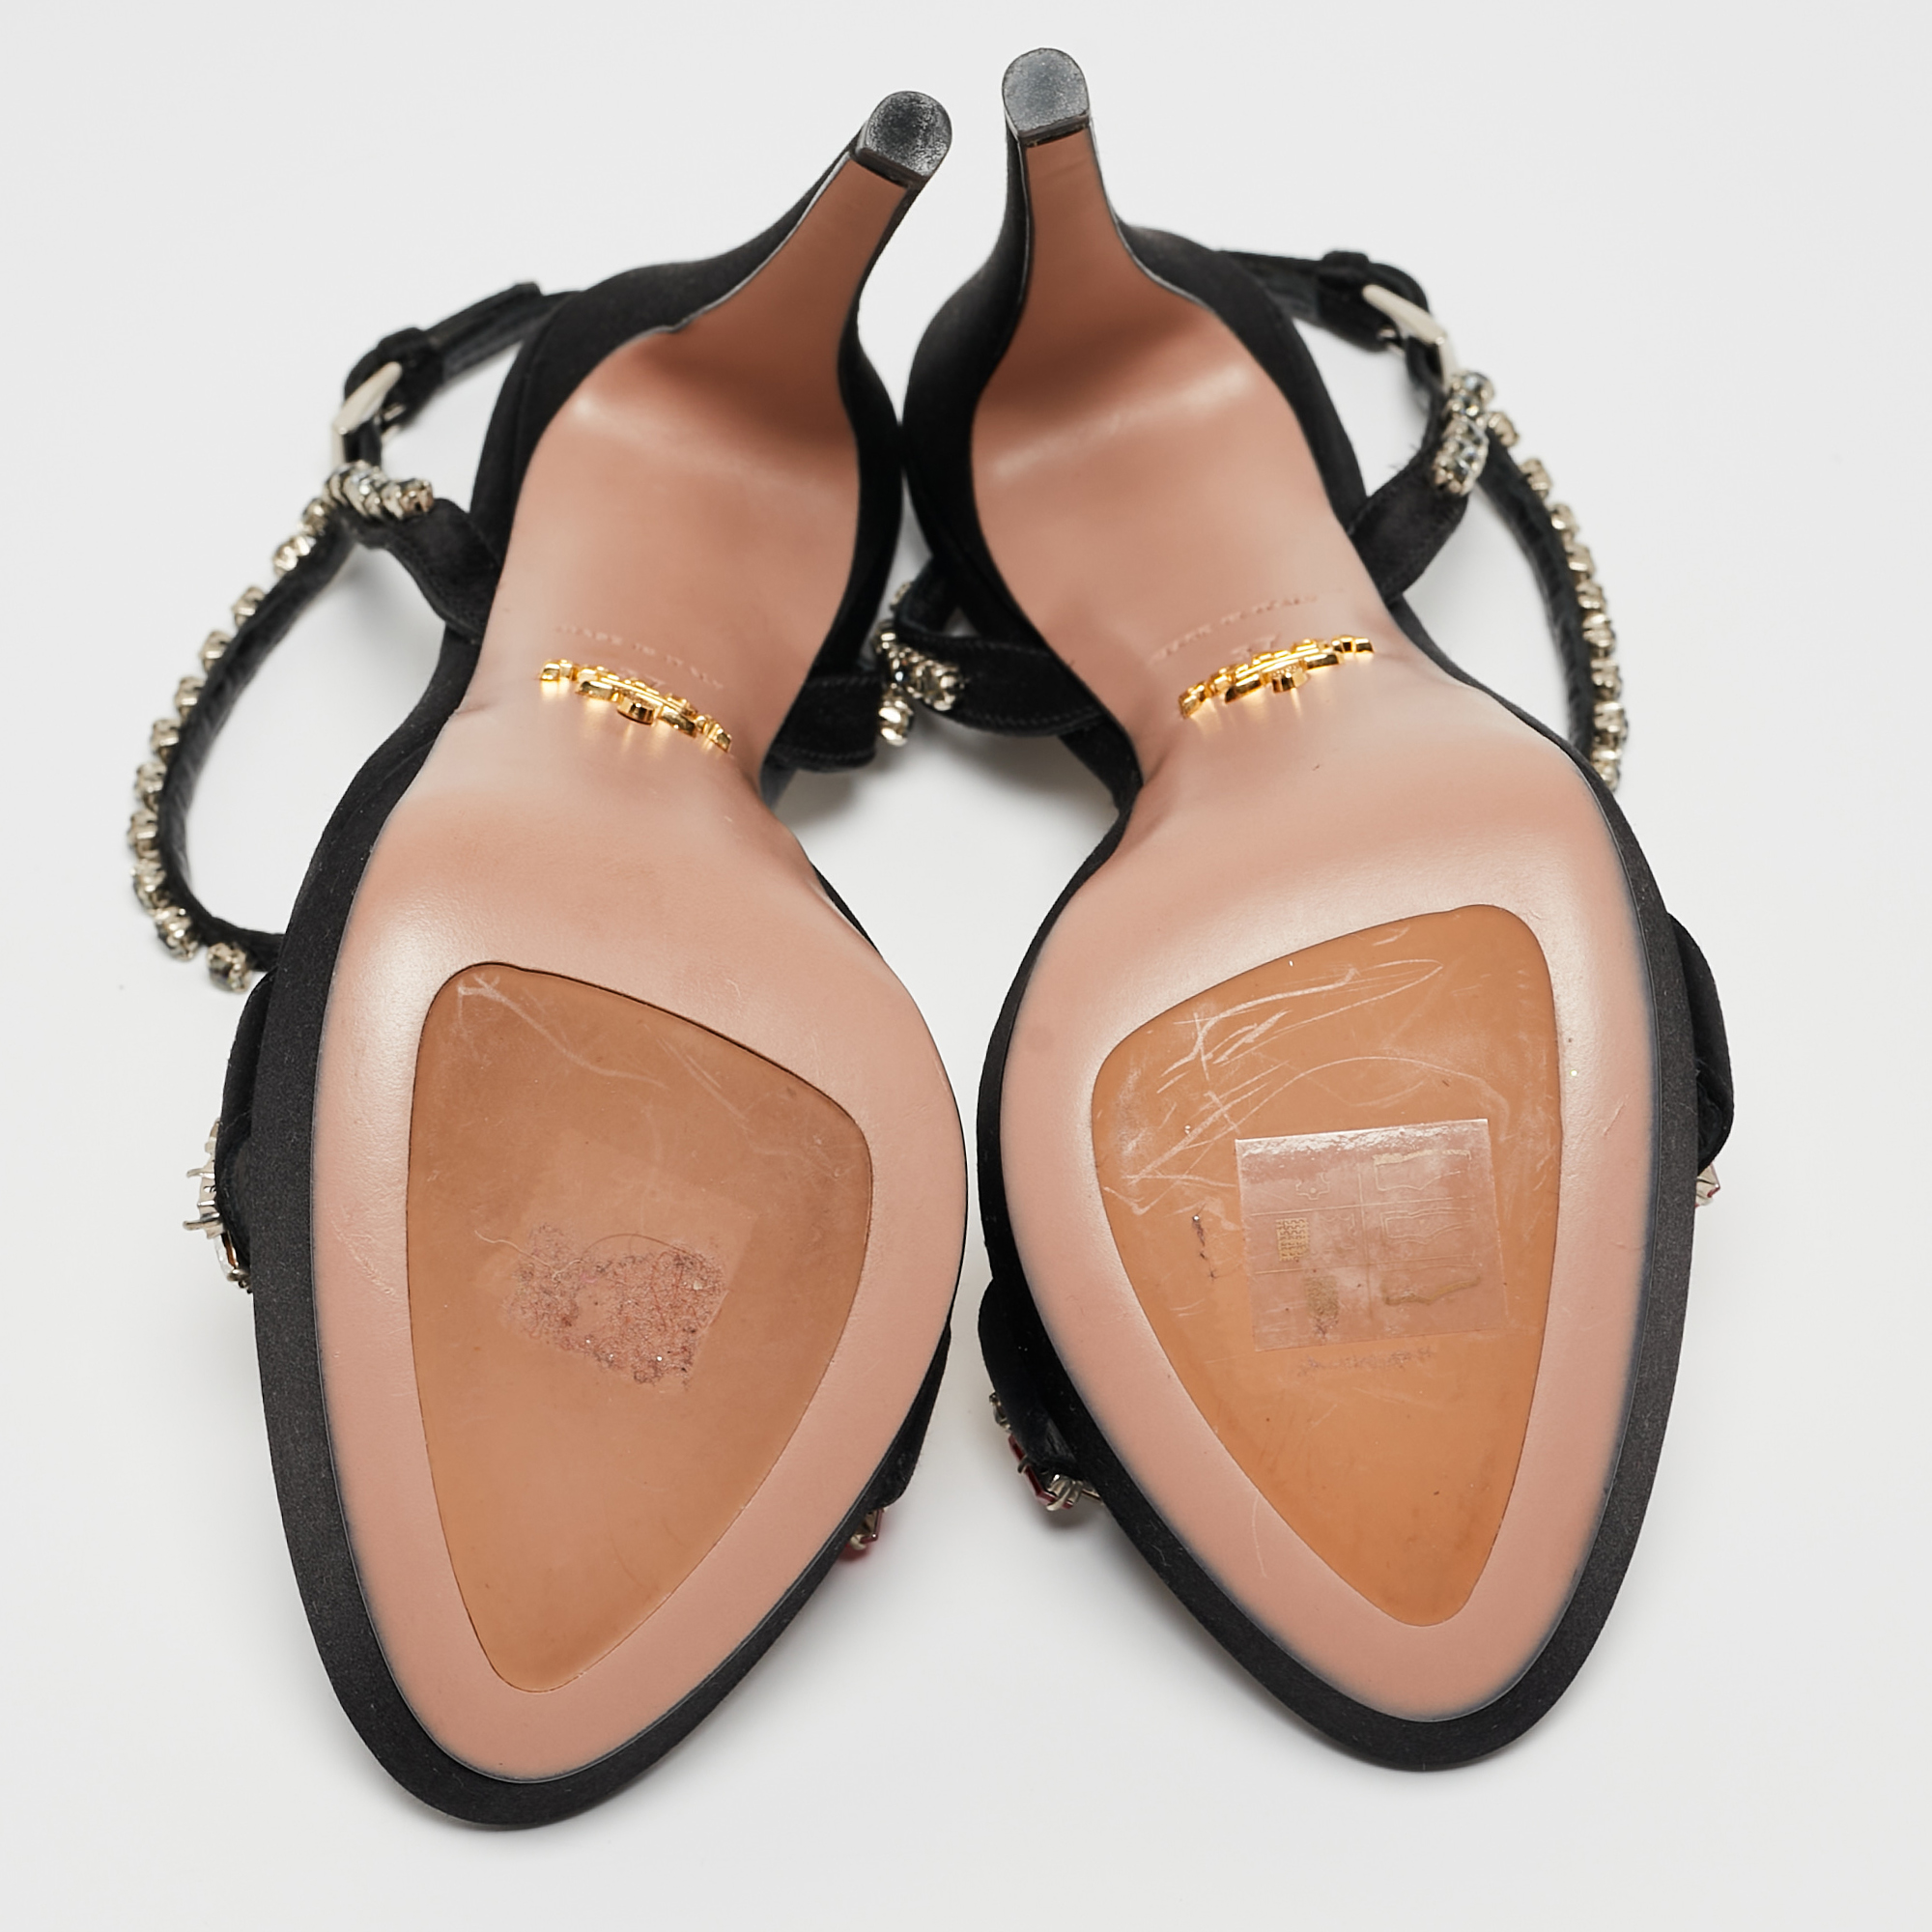 Prada Black Satin Crystal Embellished Ankle Strap Sandals Size 37